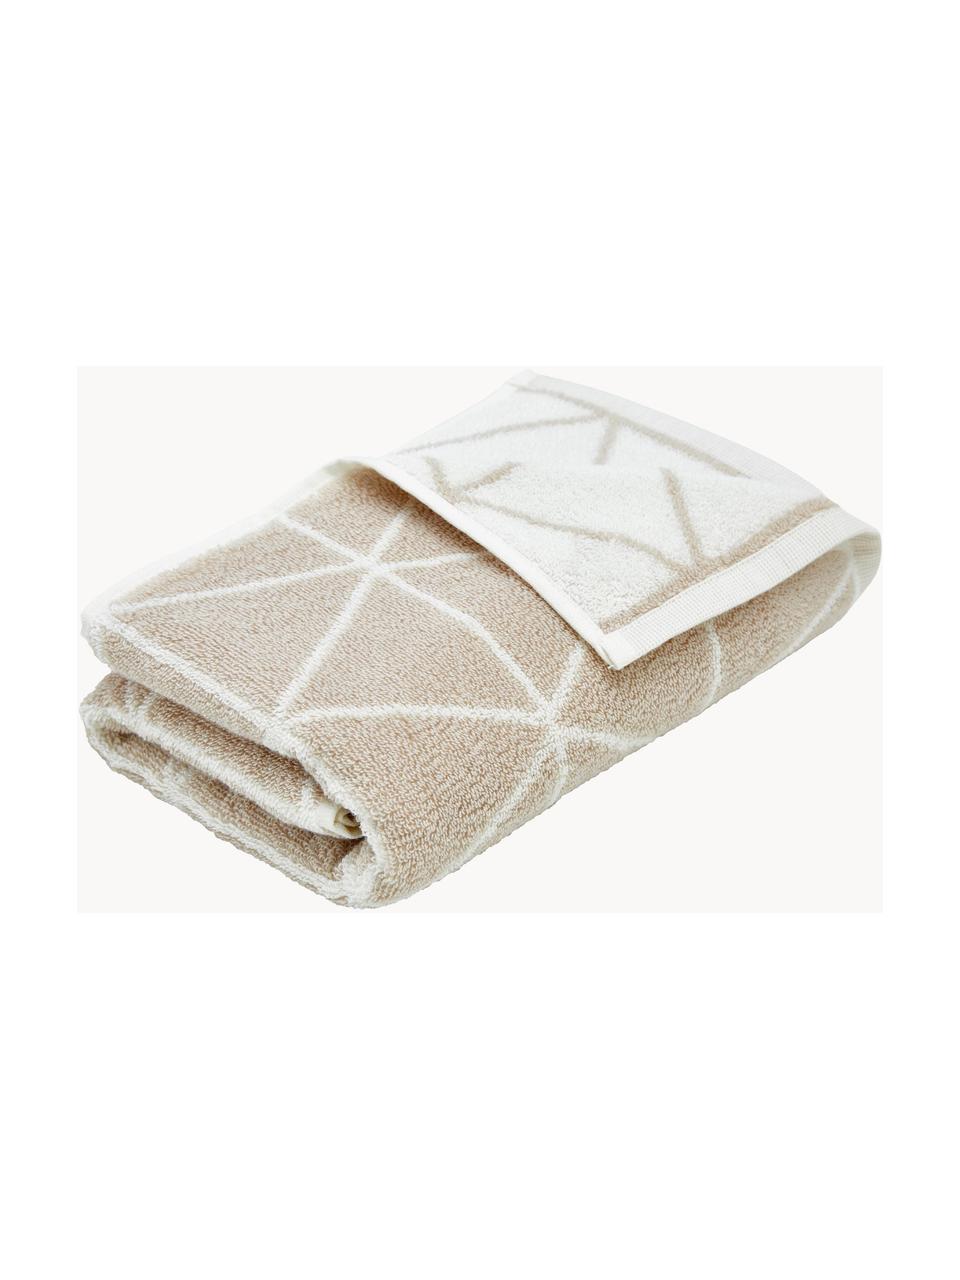 Oboustranný ručník s grafickým vzorem Elina, v různých velikostech, 100% bavlna, střední gramáž 550 g/m², Béžová, tlumeně bílá, Ručník pro hosty, Š 30, D 50 cm, 2 ks